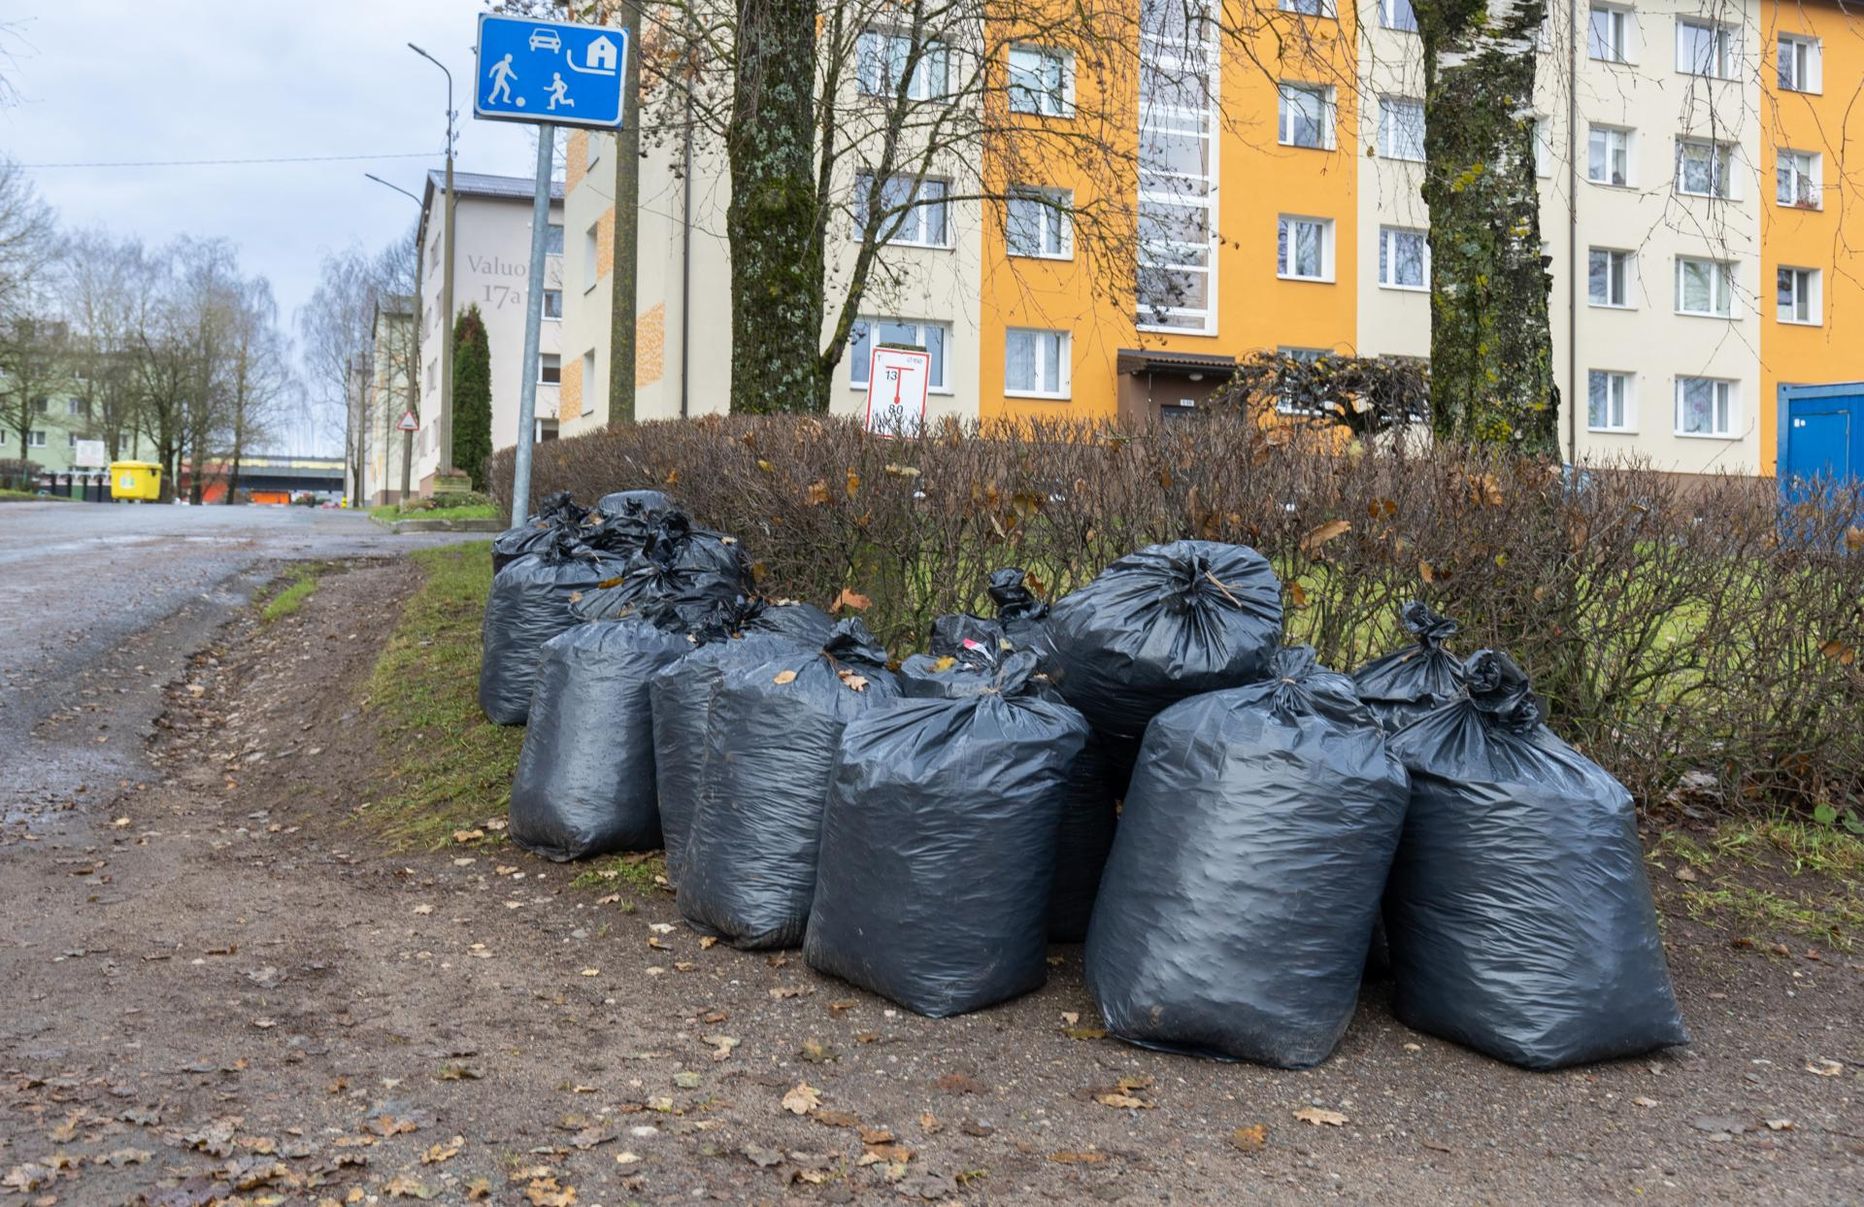 Äraveoks valmis puulehekotte märkab Viljandis endiselt, see pilt on tehtud 15. novembril.